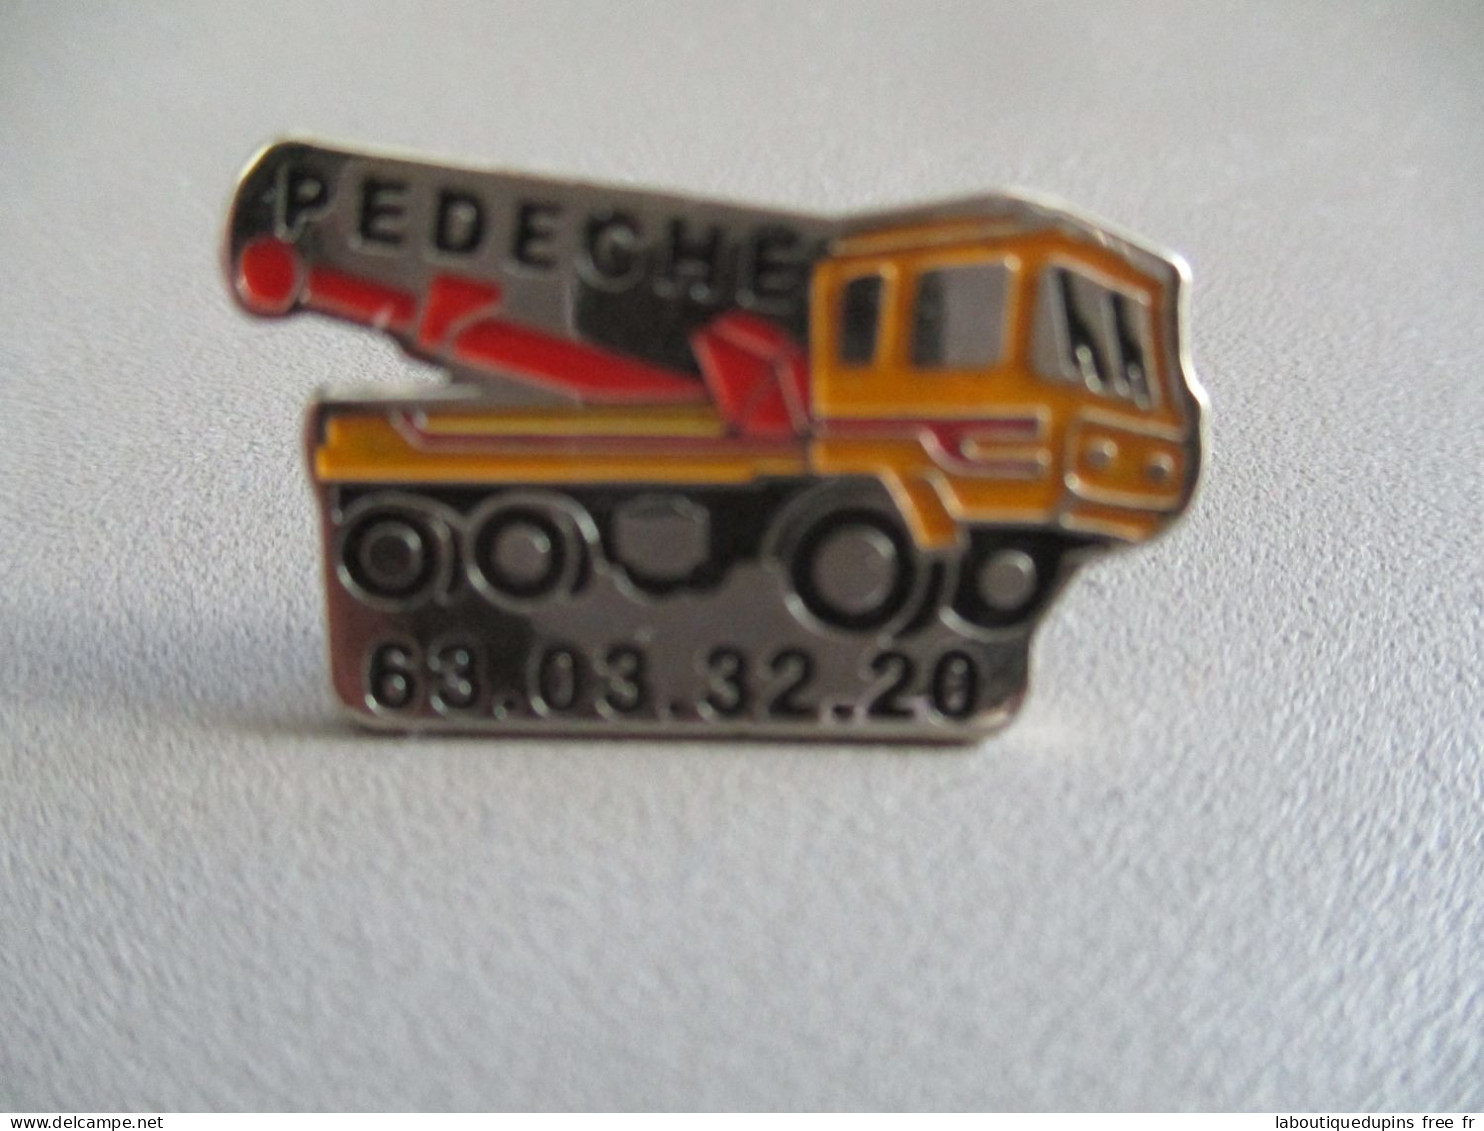 Pin's Lot 005 -- Pedeche 63 03 32 20  -- Exclusif Sur Delcampe - Transportes